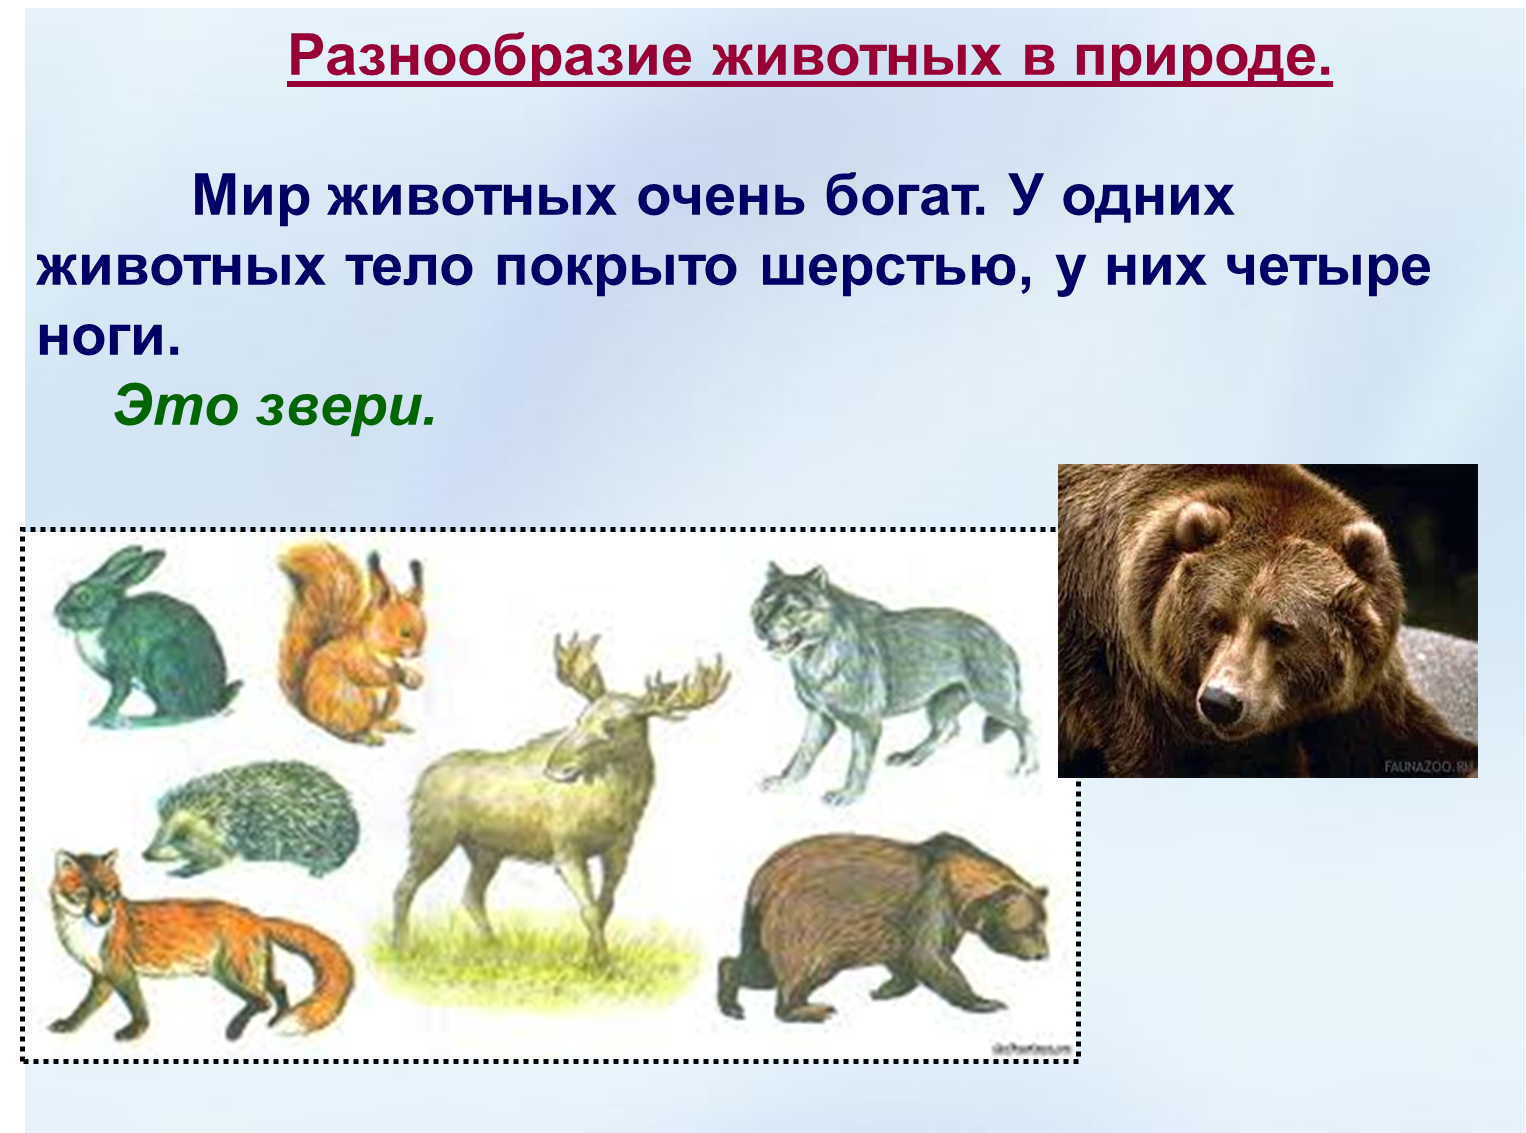 Сообщение многообразие животных. Животных разнообразие животных. Разнообразие зверей. Разнообразие животных презентация.